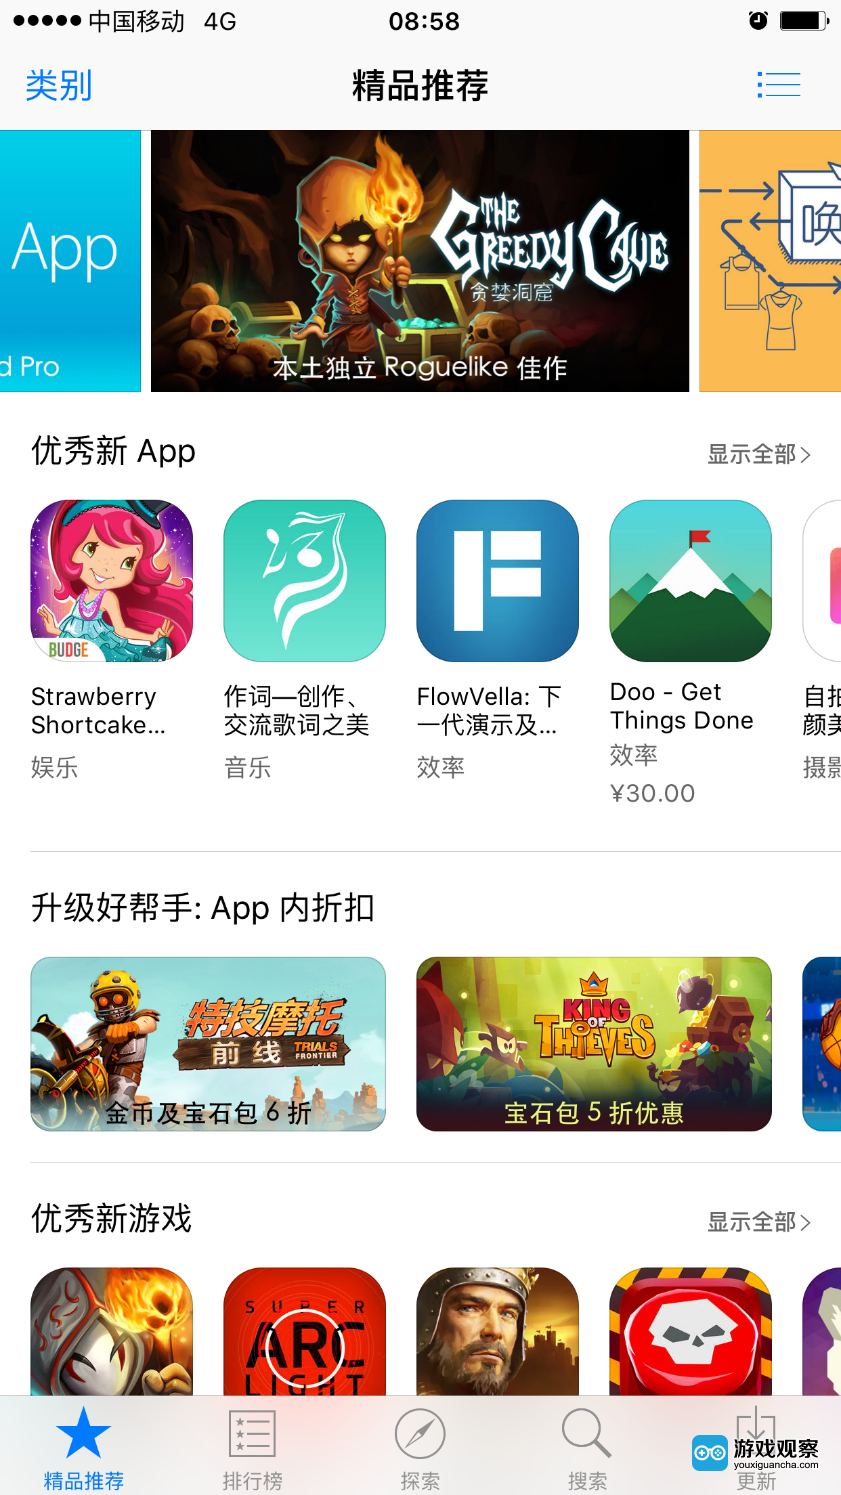 《贪婪洞窟》获苹果App Store 首页Banner和新游推荐